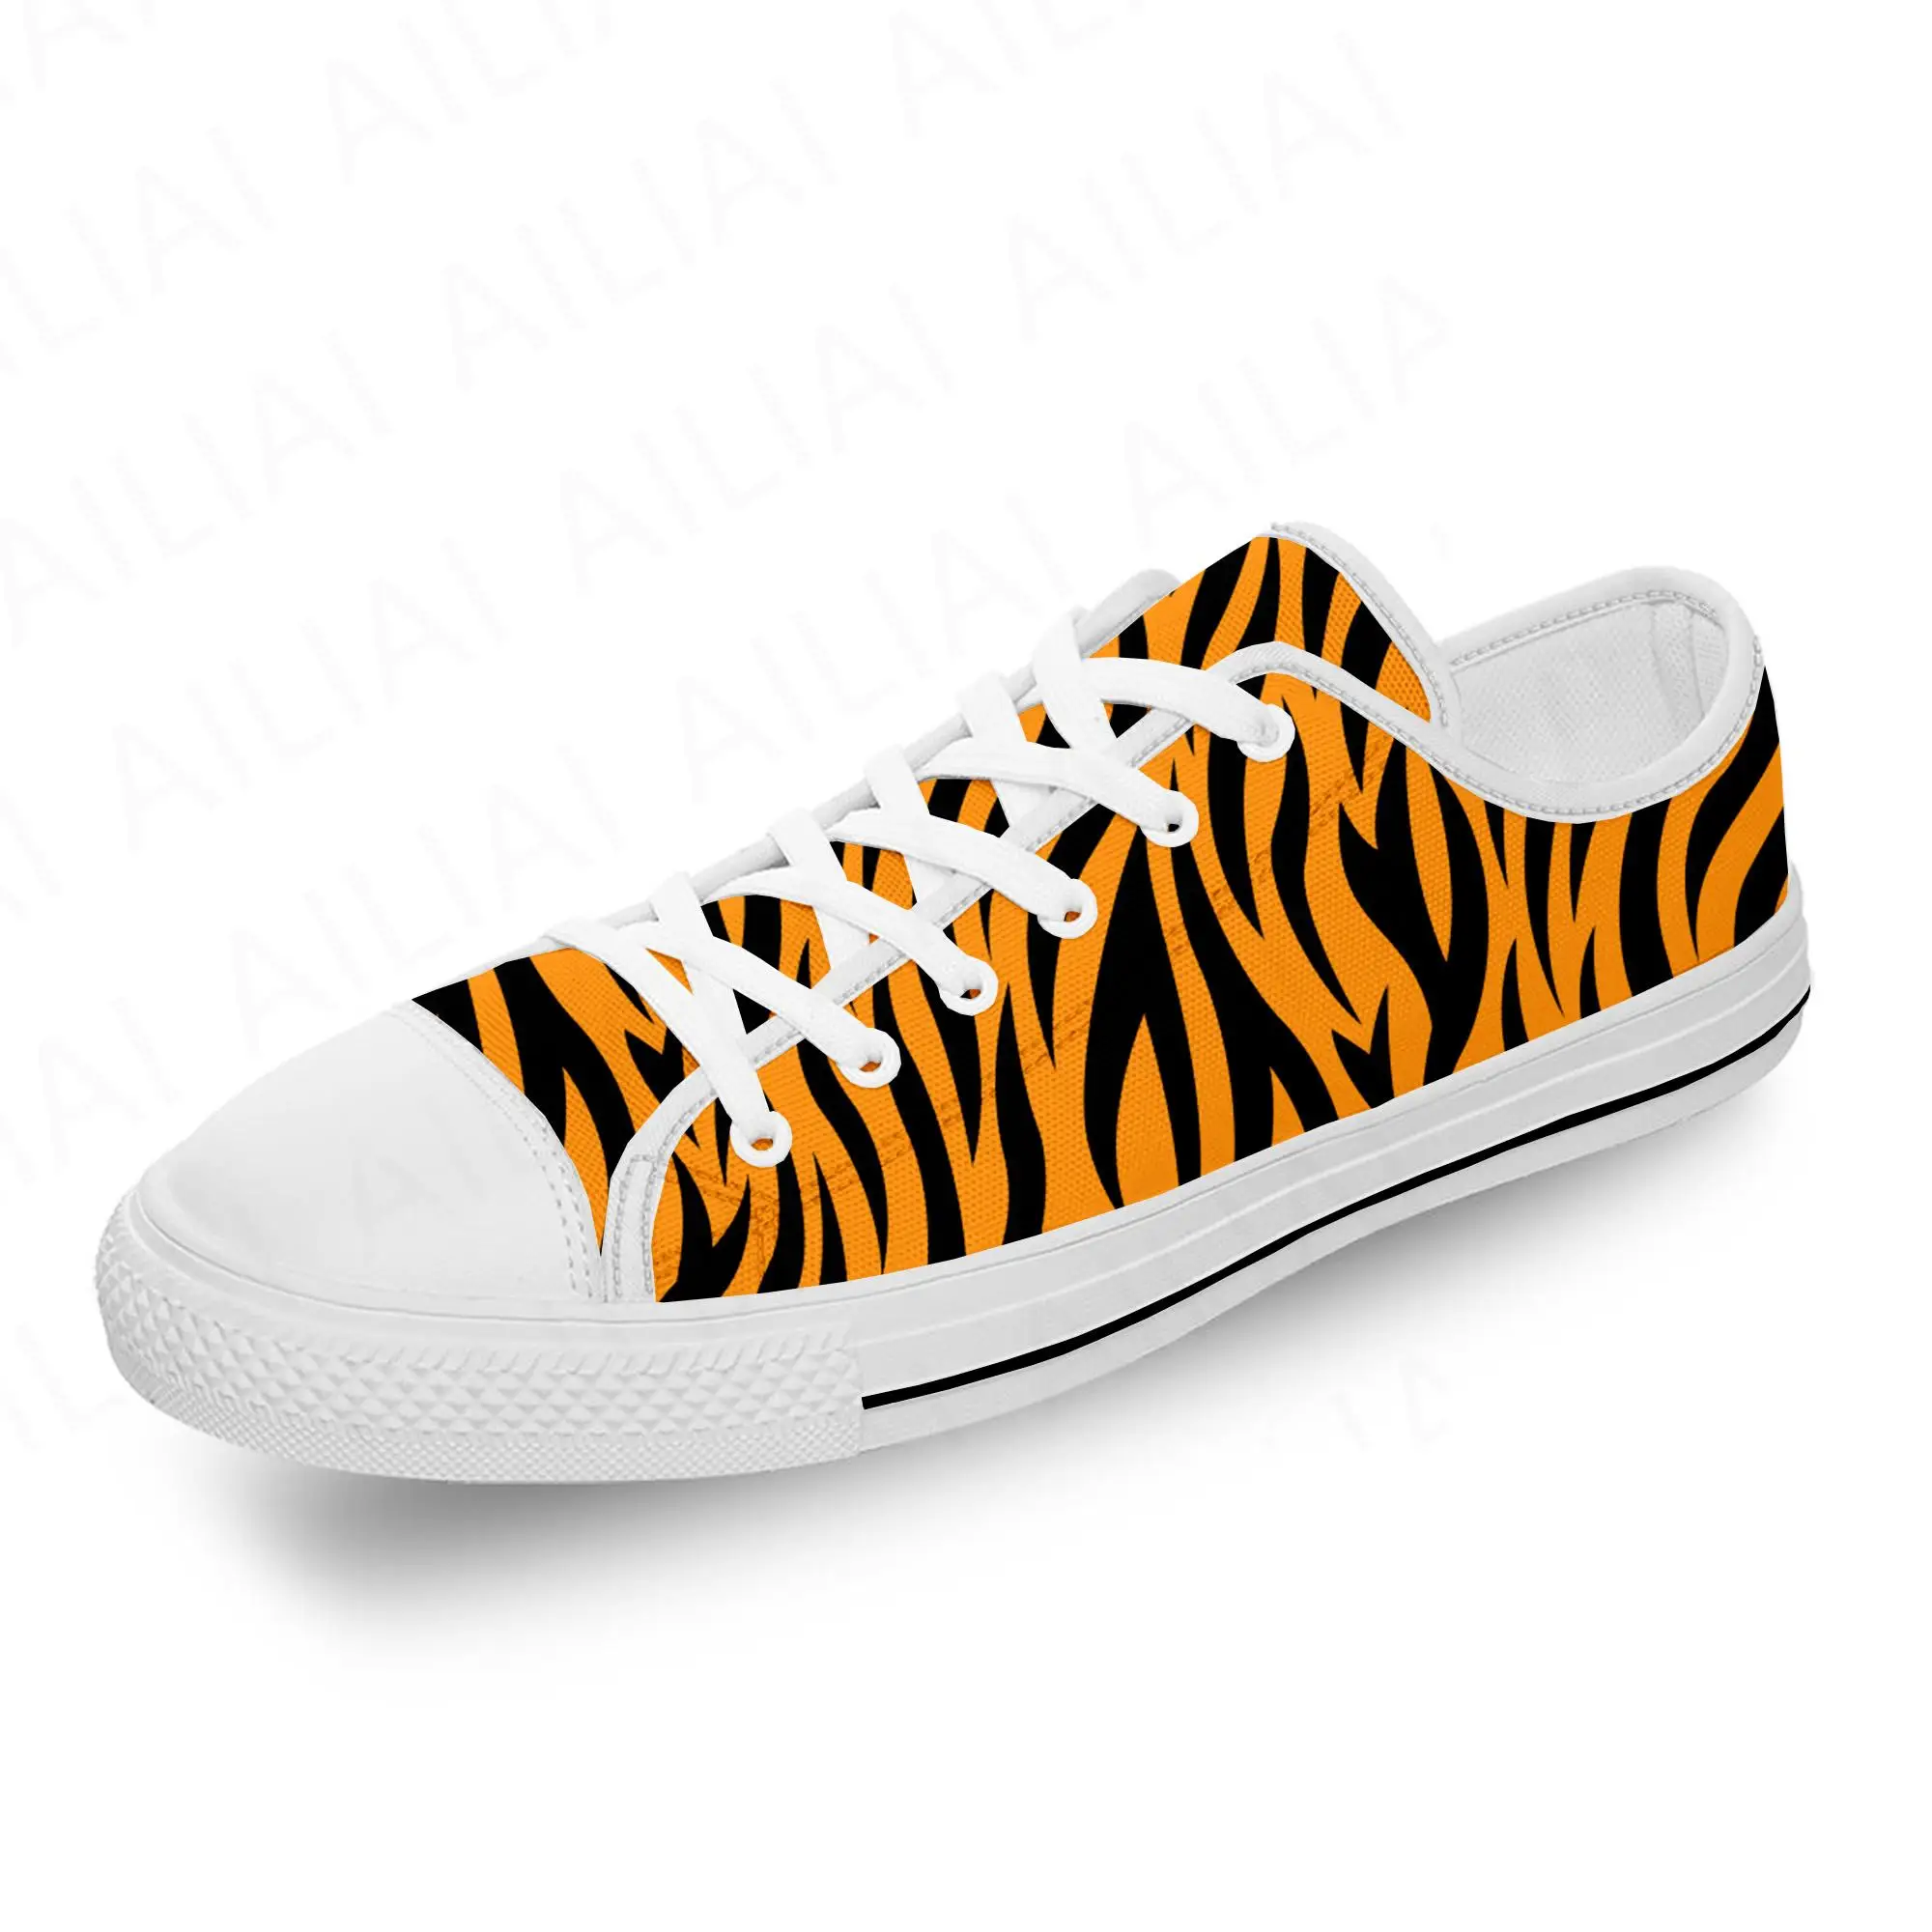 

Текстильные кроссовки для мужчин и женщин, легкие дышащие кеды с 3D-принтом тигра и полосы, модная забавная обувь с низким верхом, белого цвета